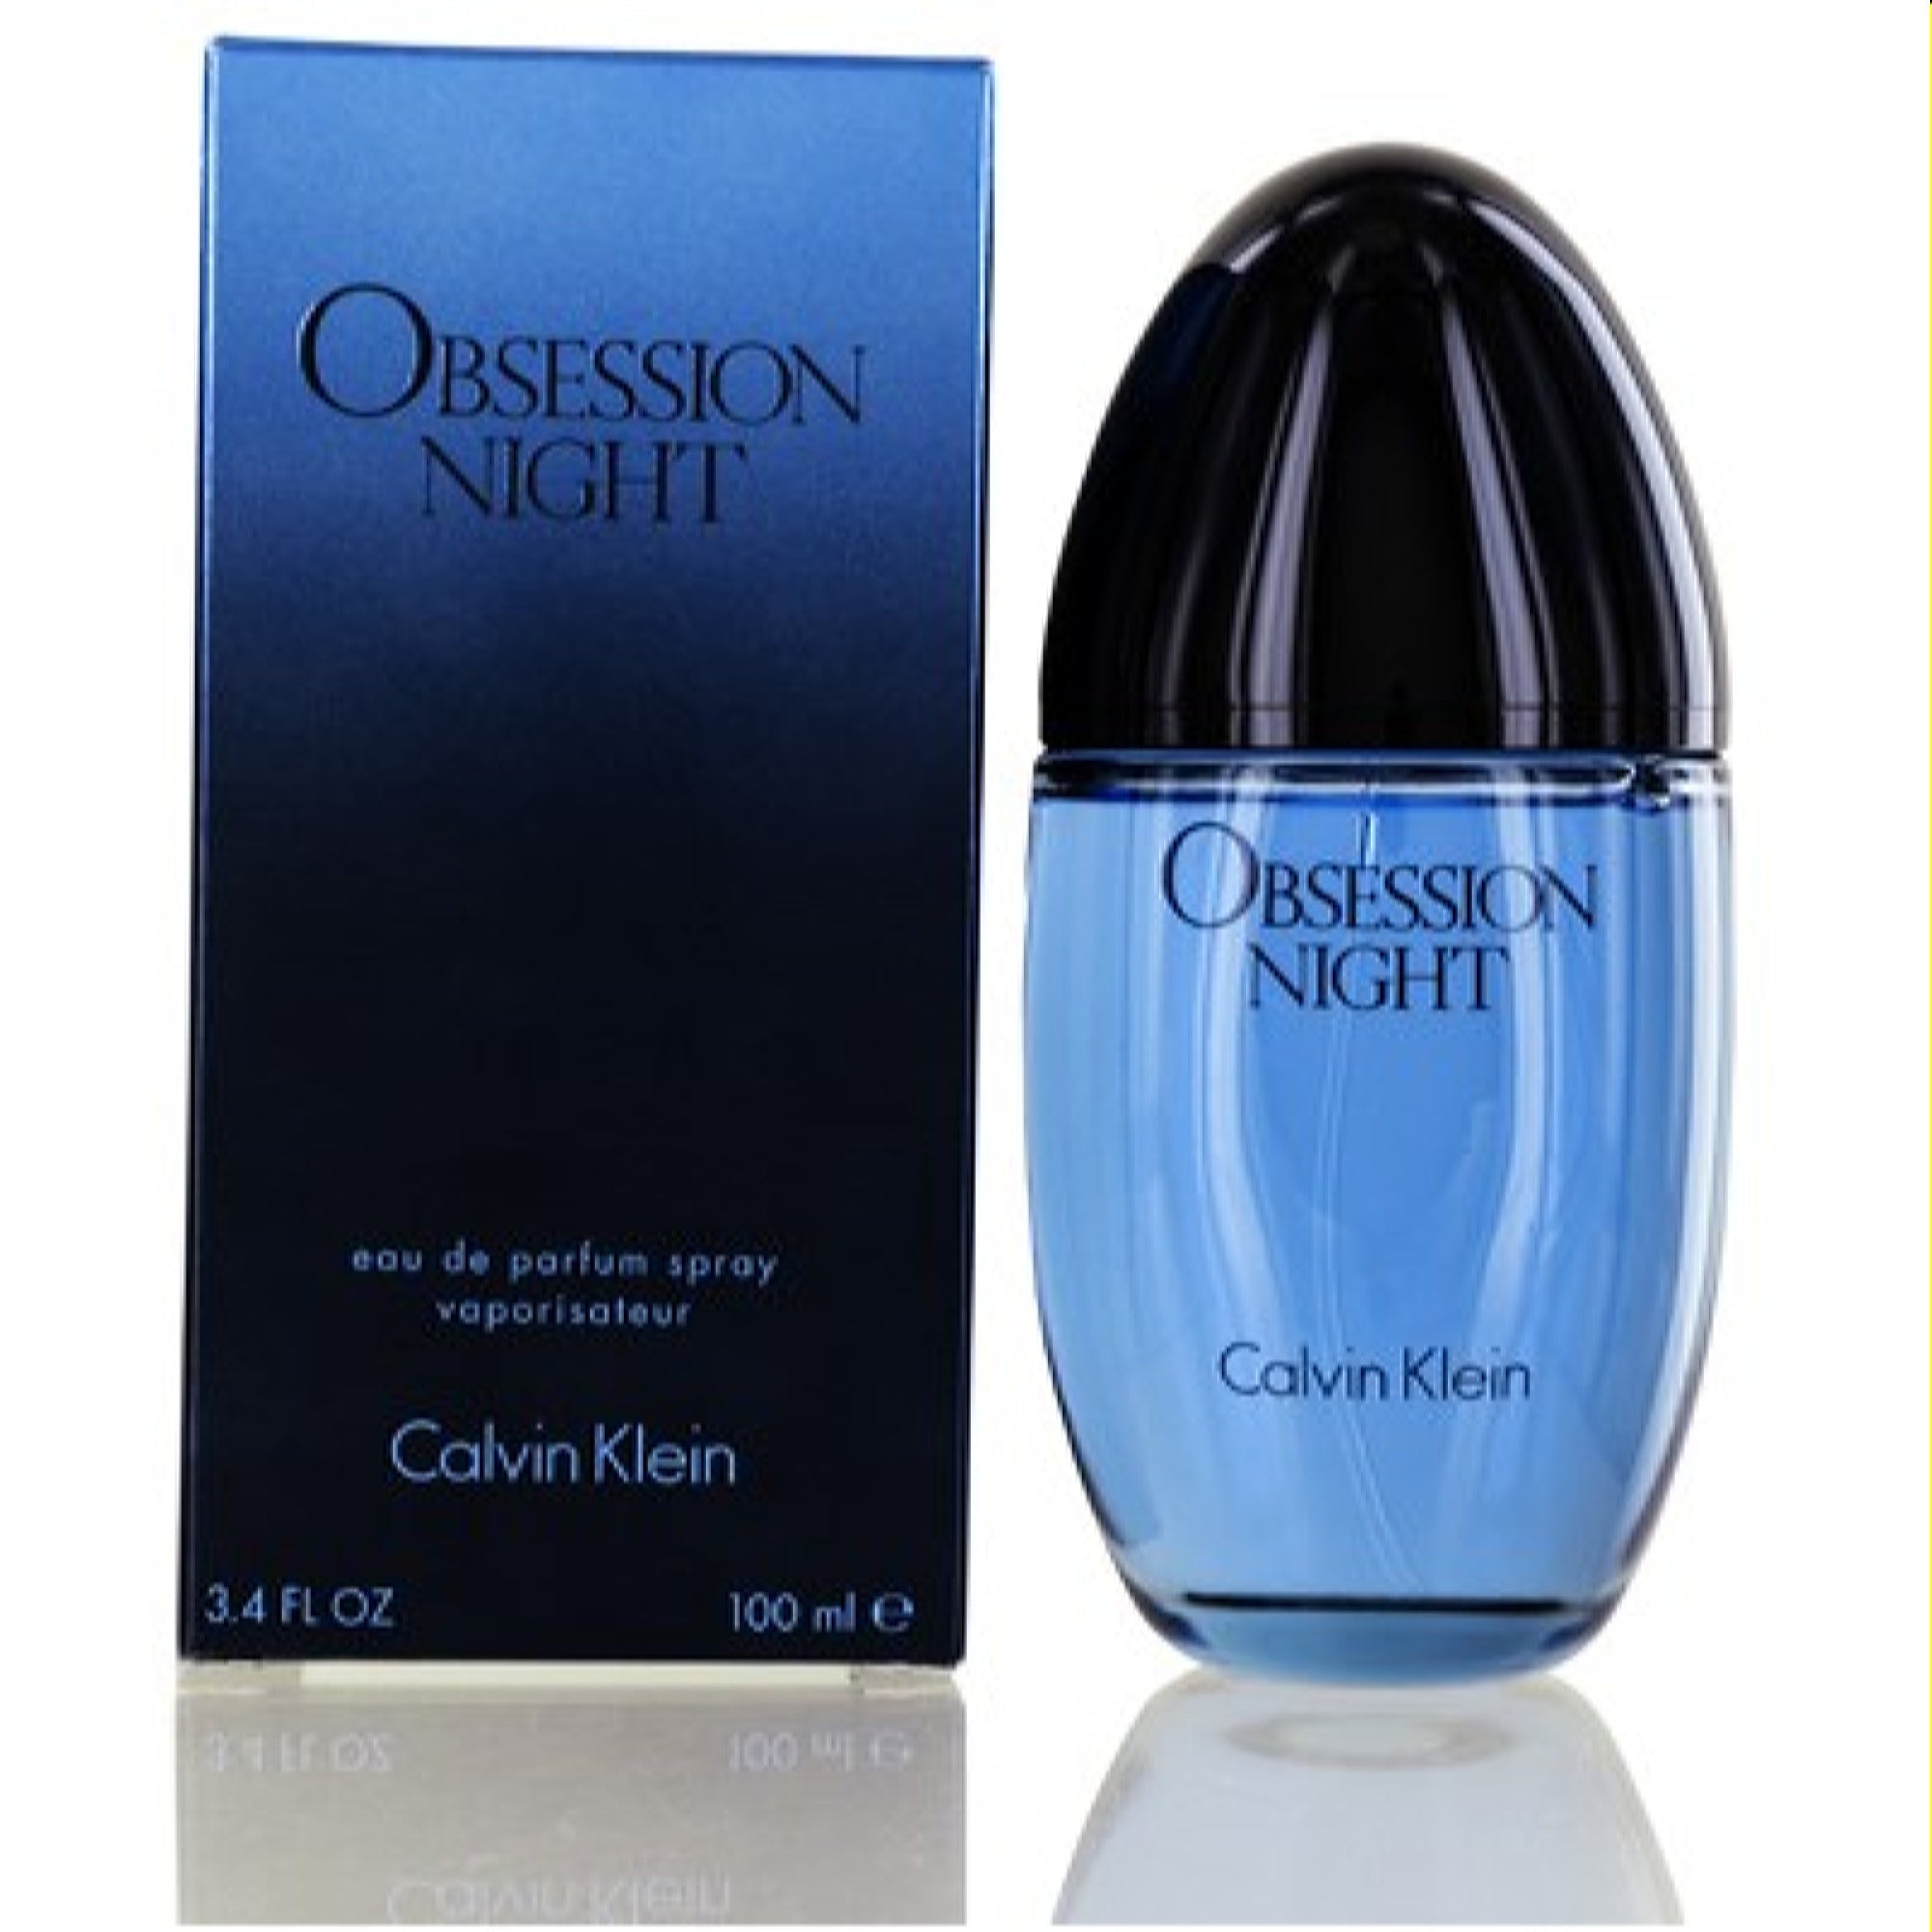 Obsession Night Calvin Klein Edp Women Bezali Oz 3.4 - 1003240 For Spray